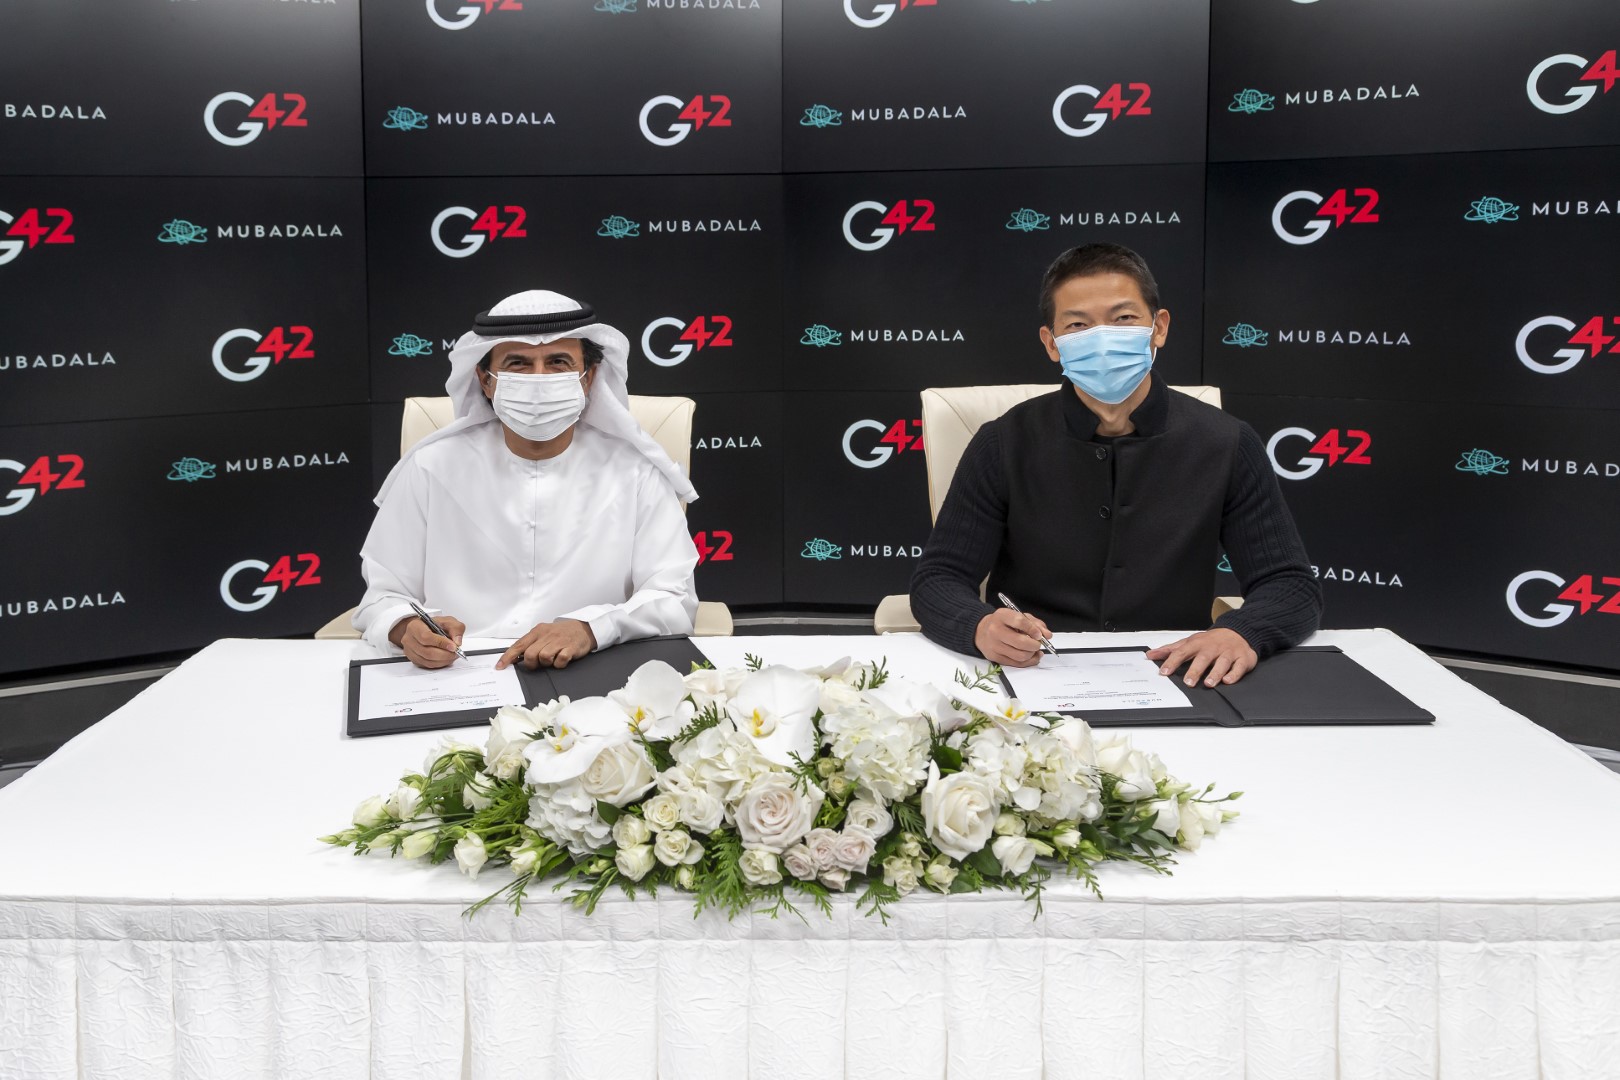 Mubadala, G42 Partner To Establish Biopharma Manufacturing Campus In Abu Dhabi